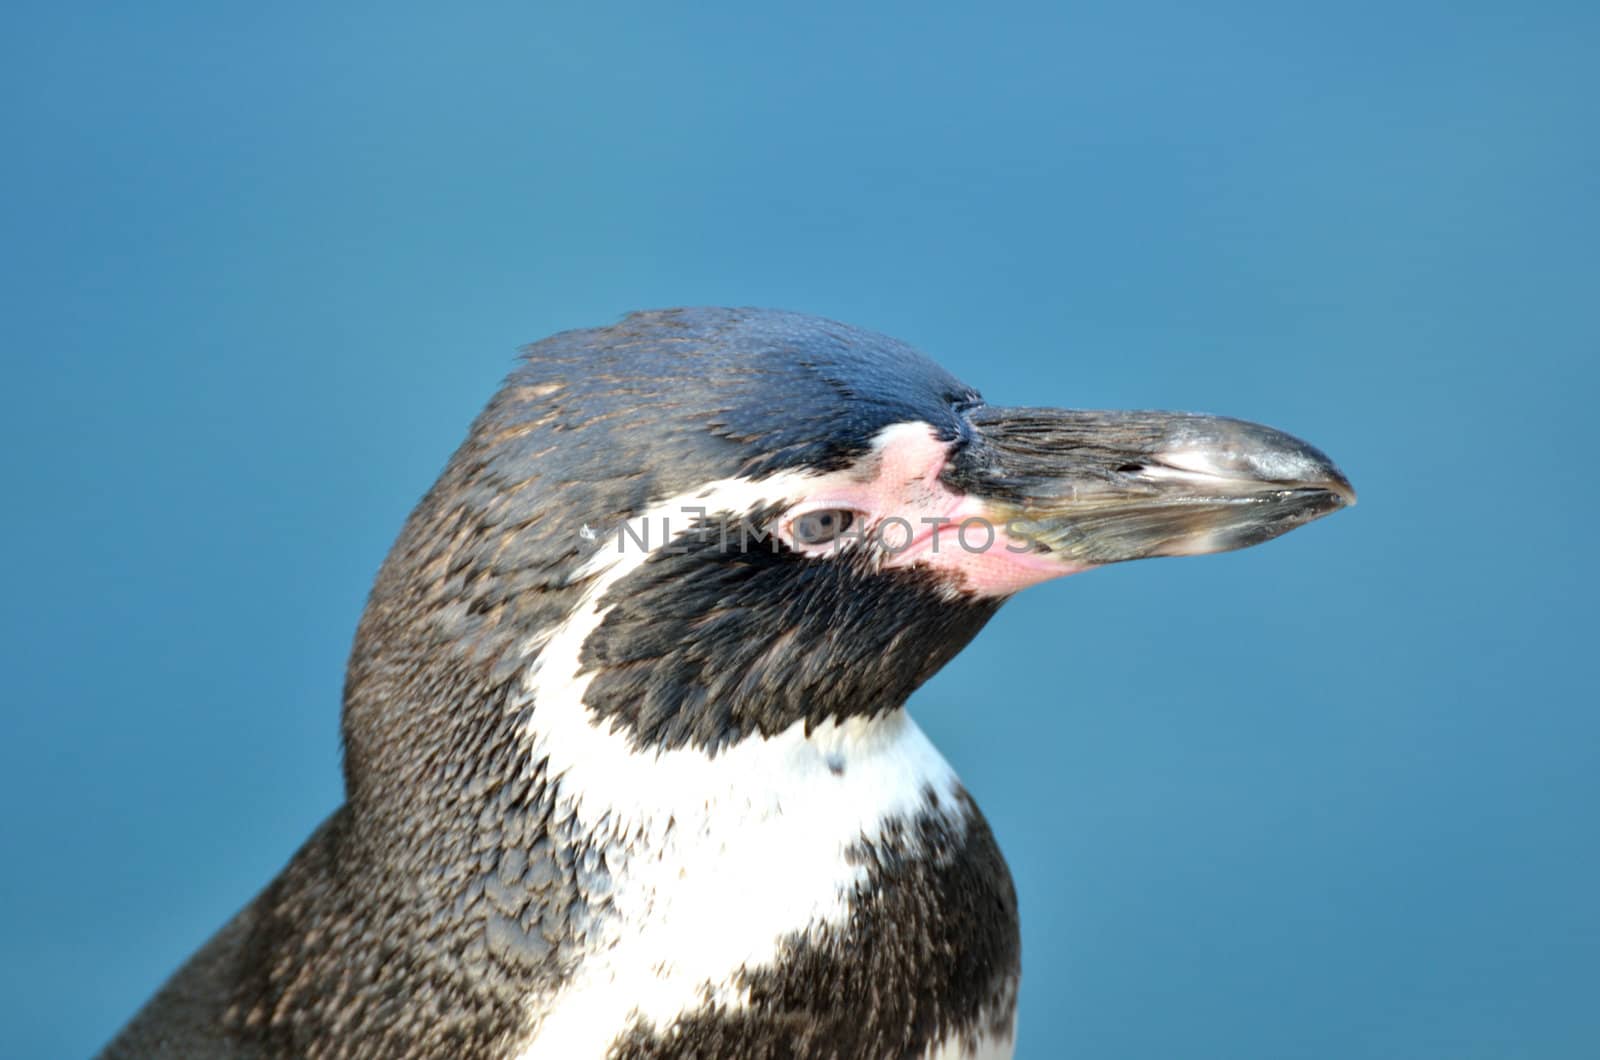 Penguin Head by pauws99